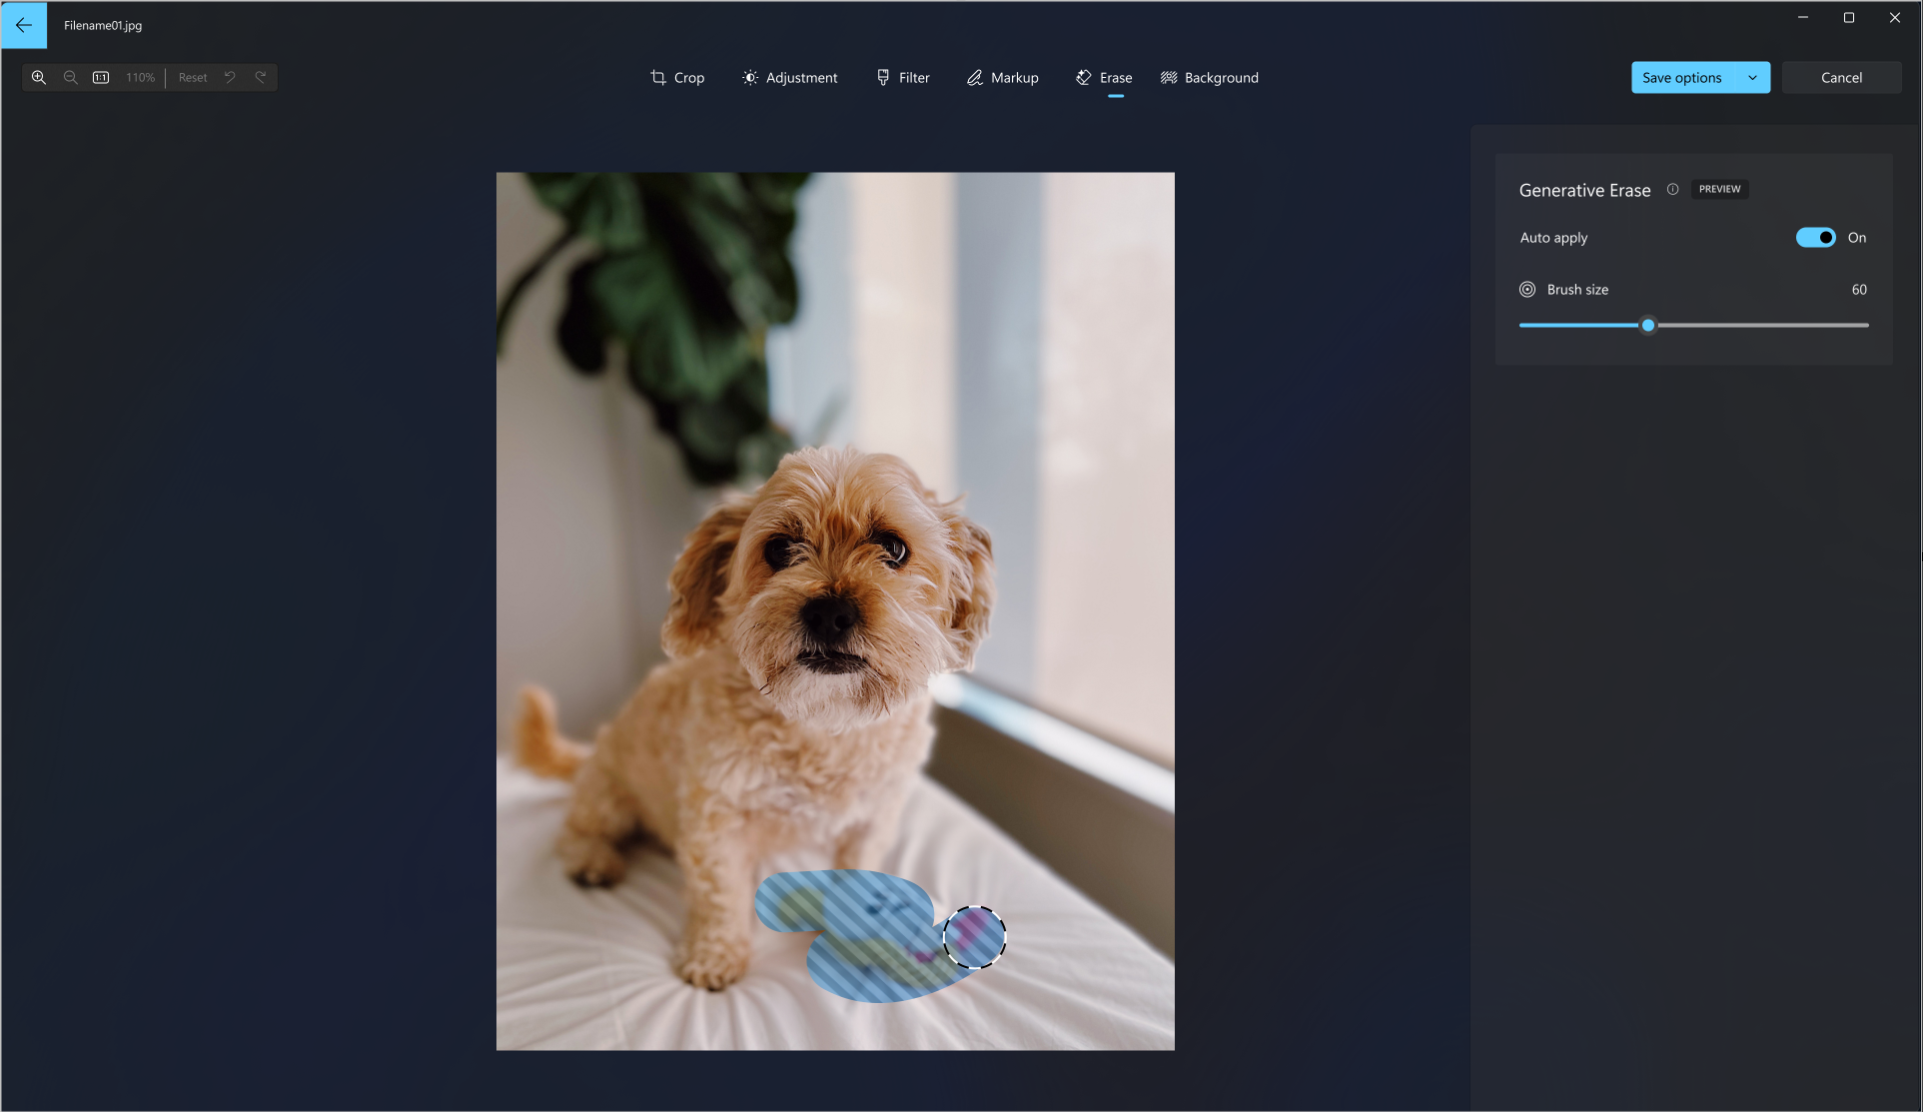 Captura de pantalla de la herramienta de borrador generativa que se usa en una foto de un perro para borrar el juguete del perro de la imagen.